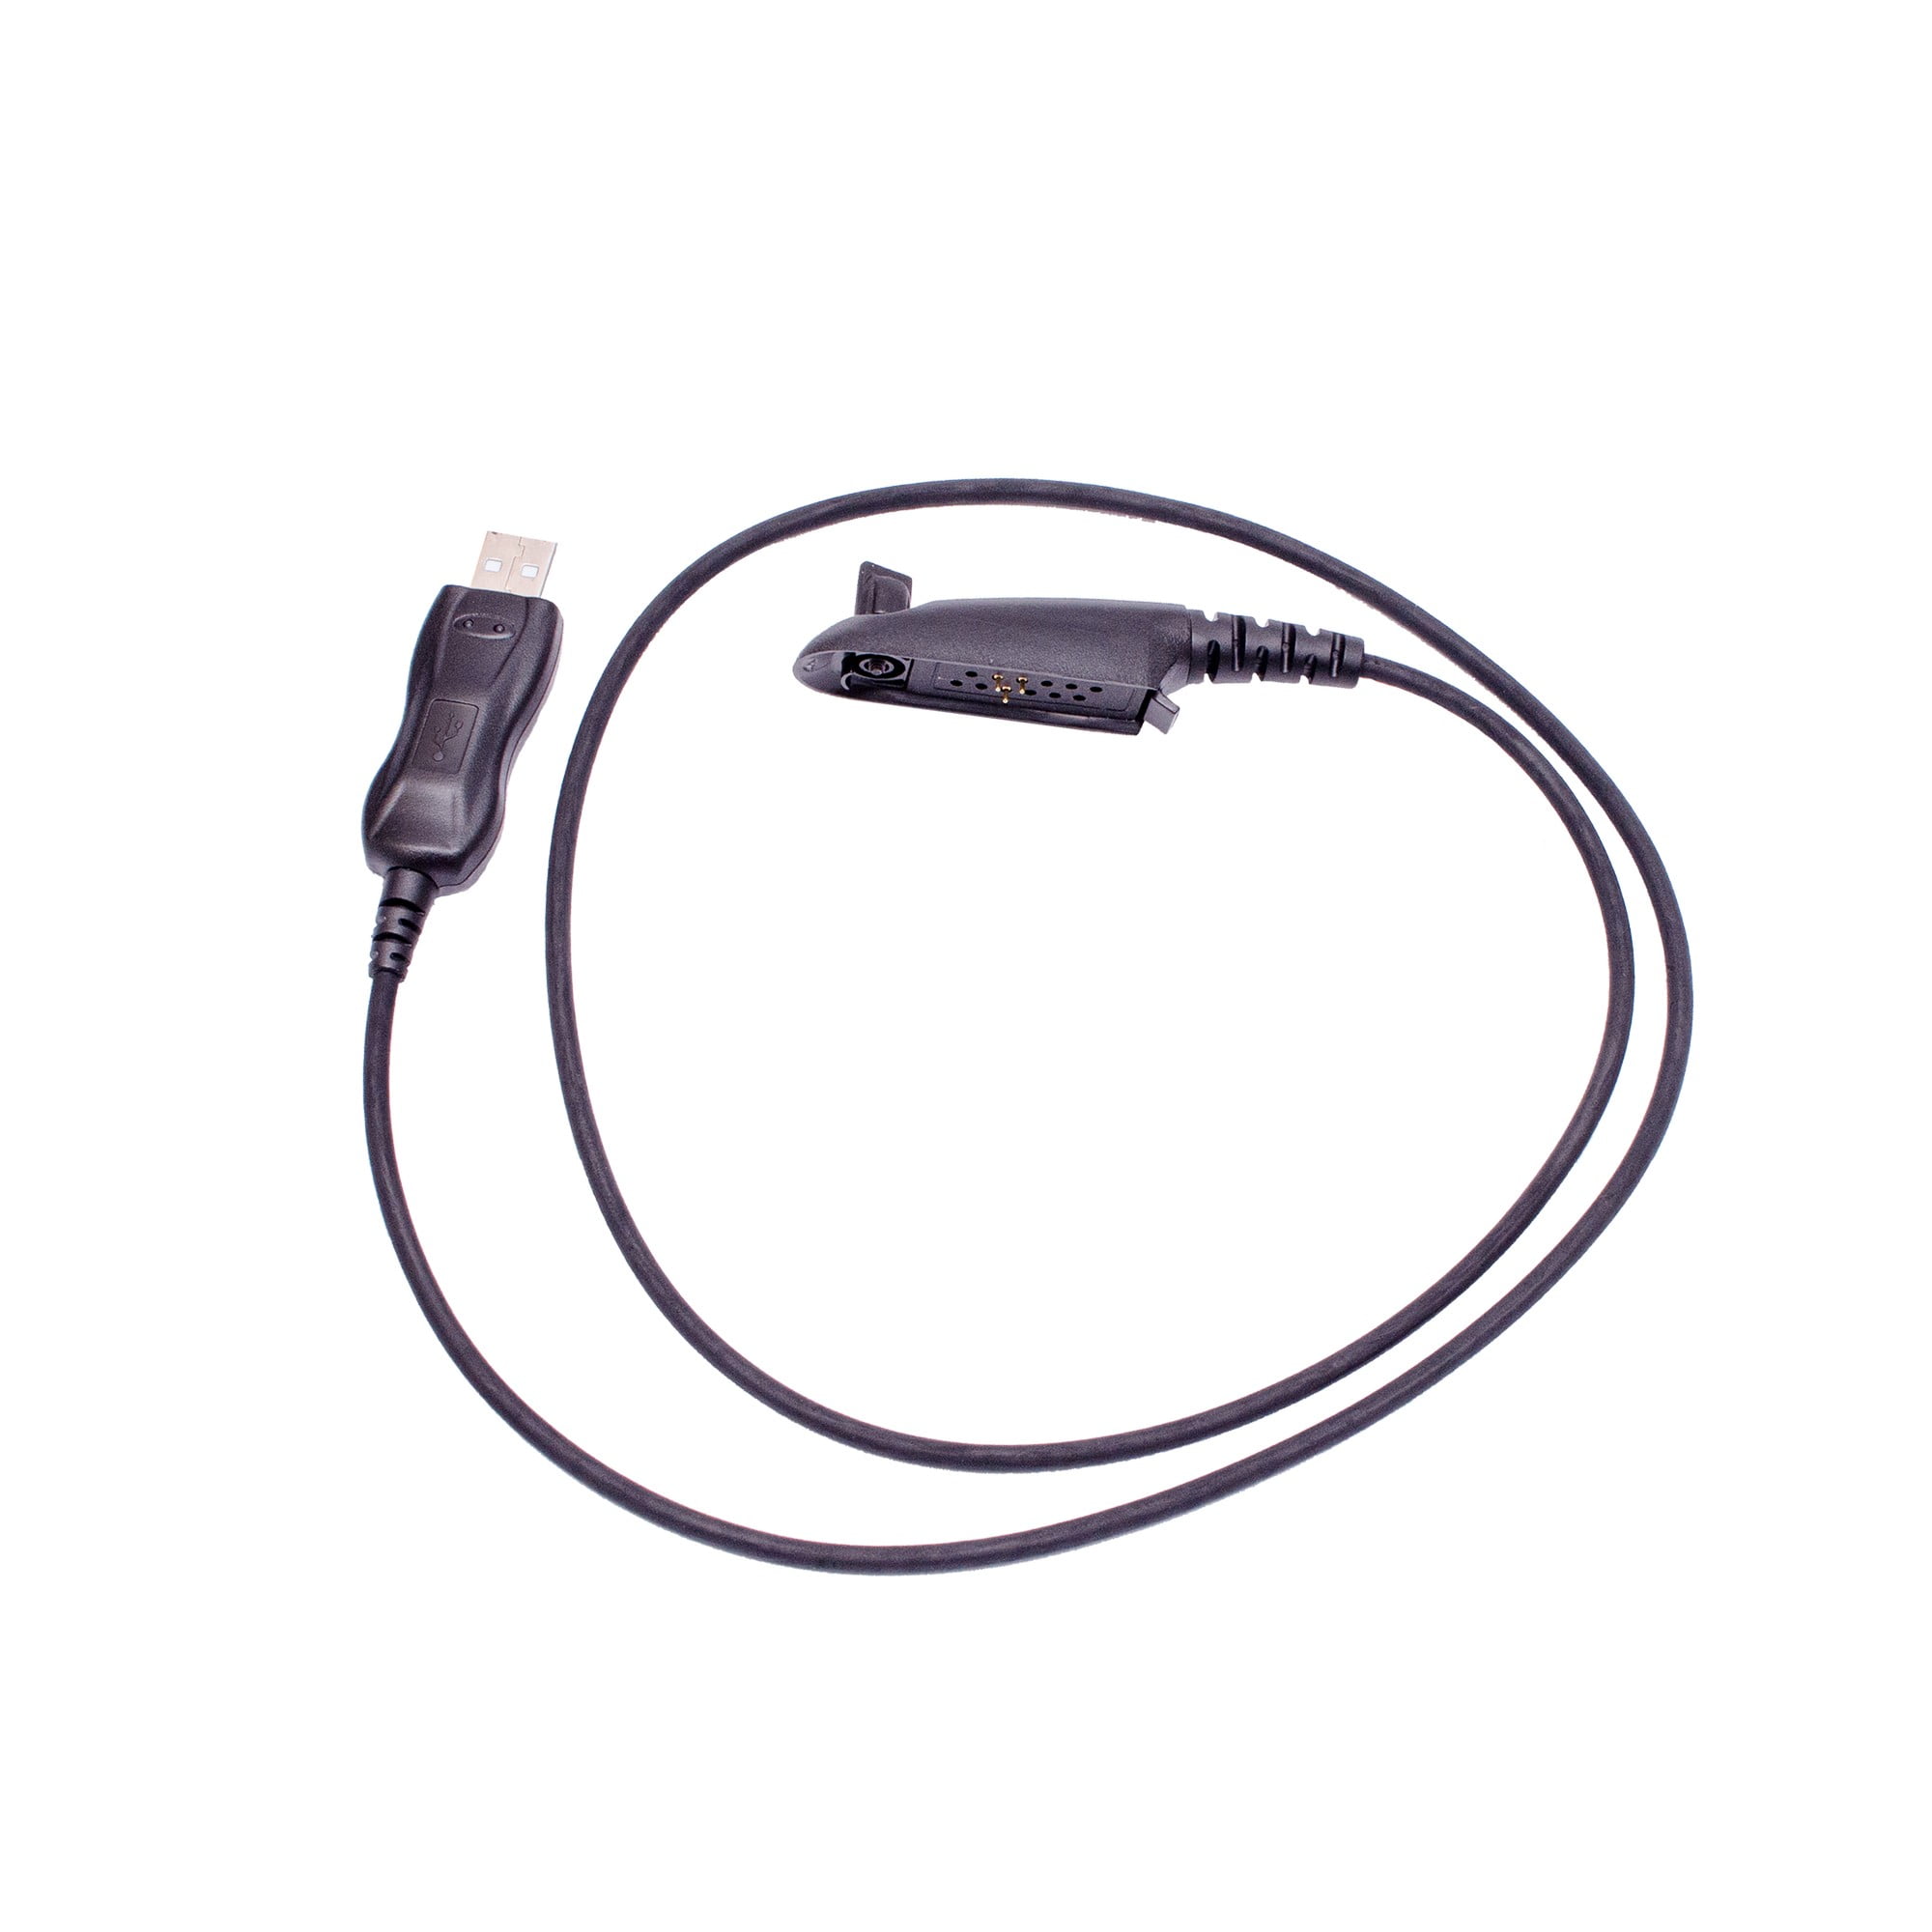 Arrowmax APCUSB-MR4074 FTDI USB Programming Cable for Motorola HT750 MTX8250LS GP328 GP329 GP338 PRO5150 PRO5350 PRO5450